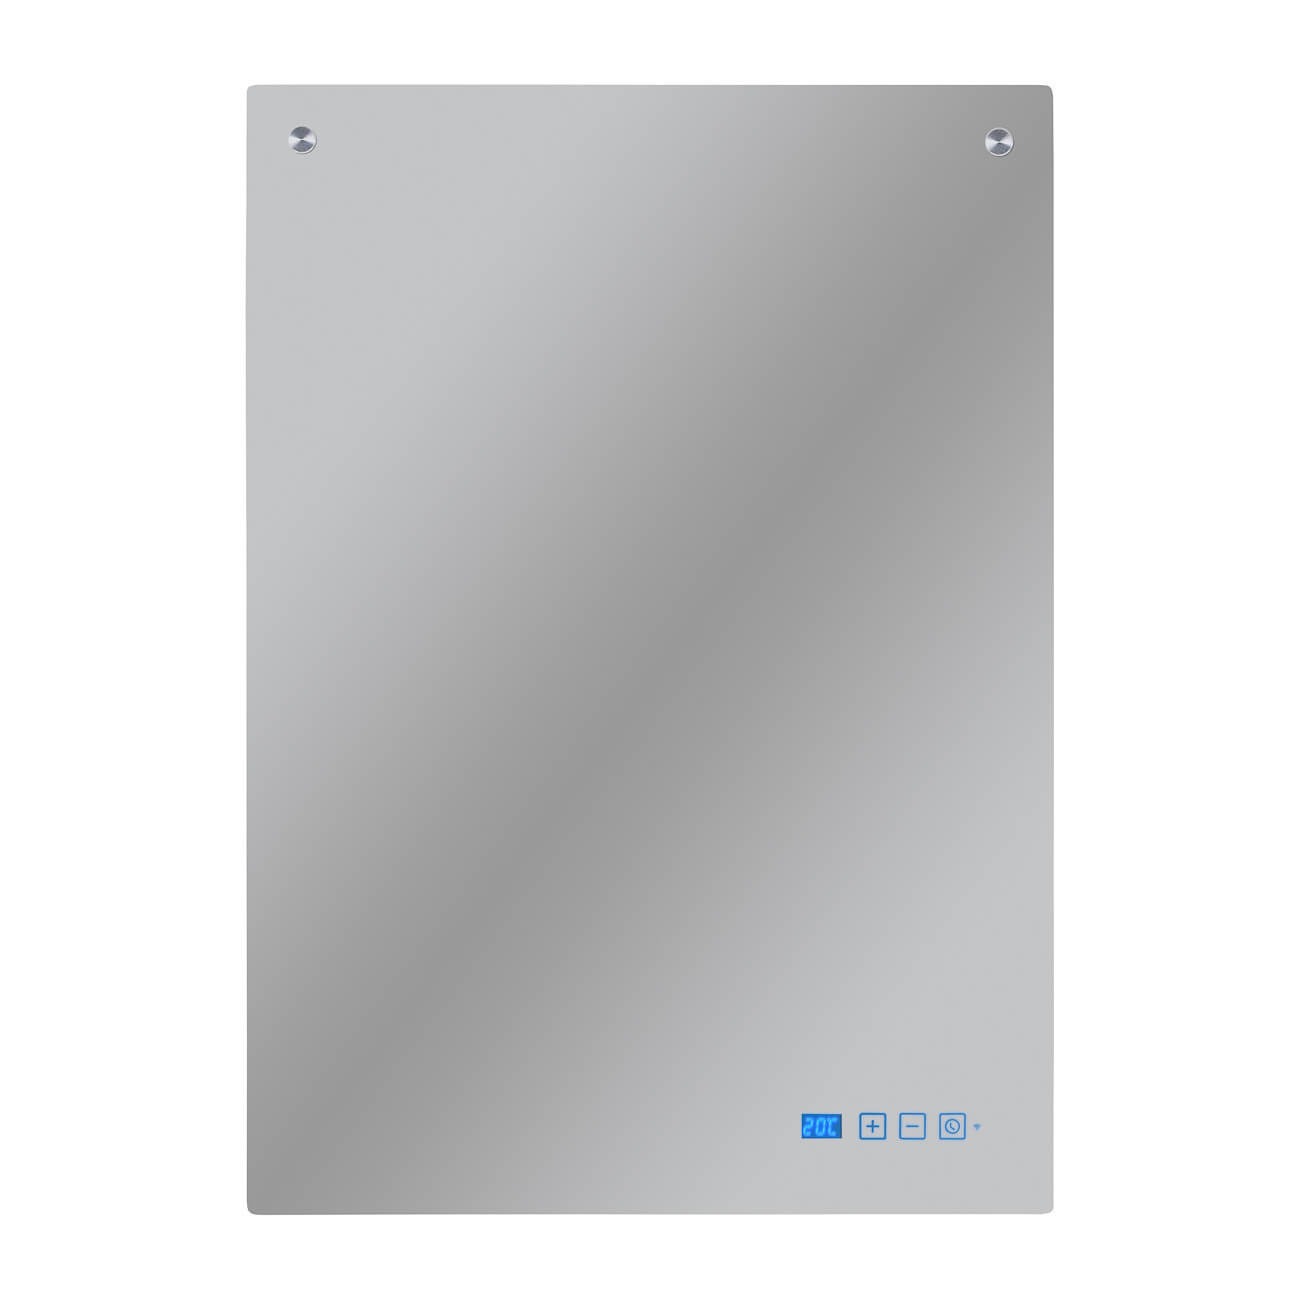 Sani 400 Infrarood Spiegel | 400 W | 5 x 50 x 70 cm